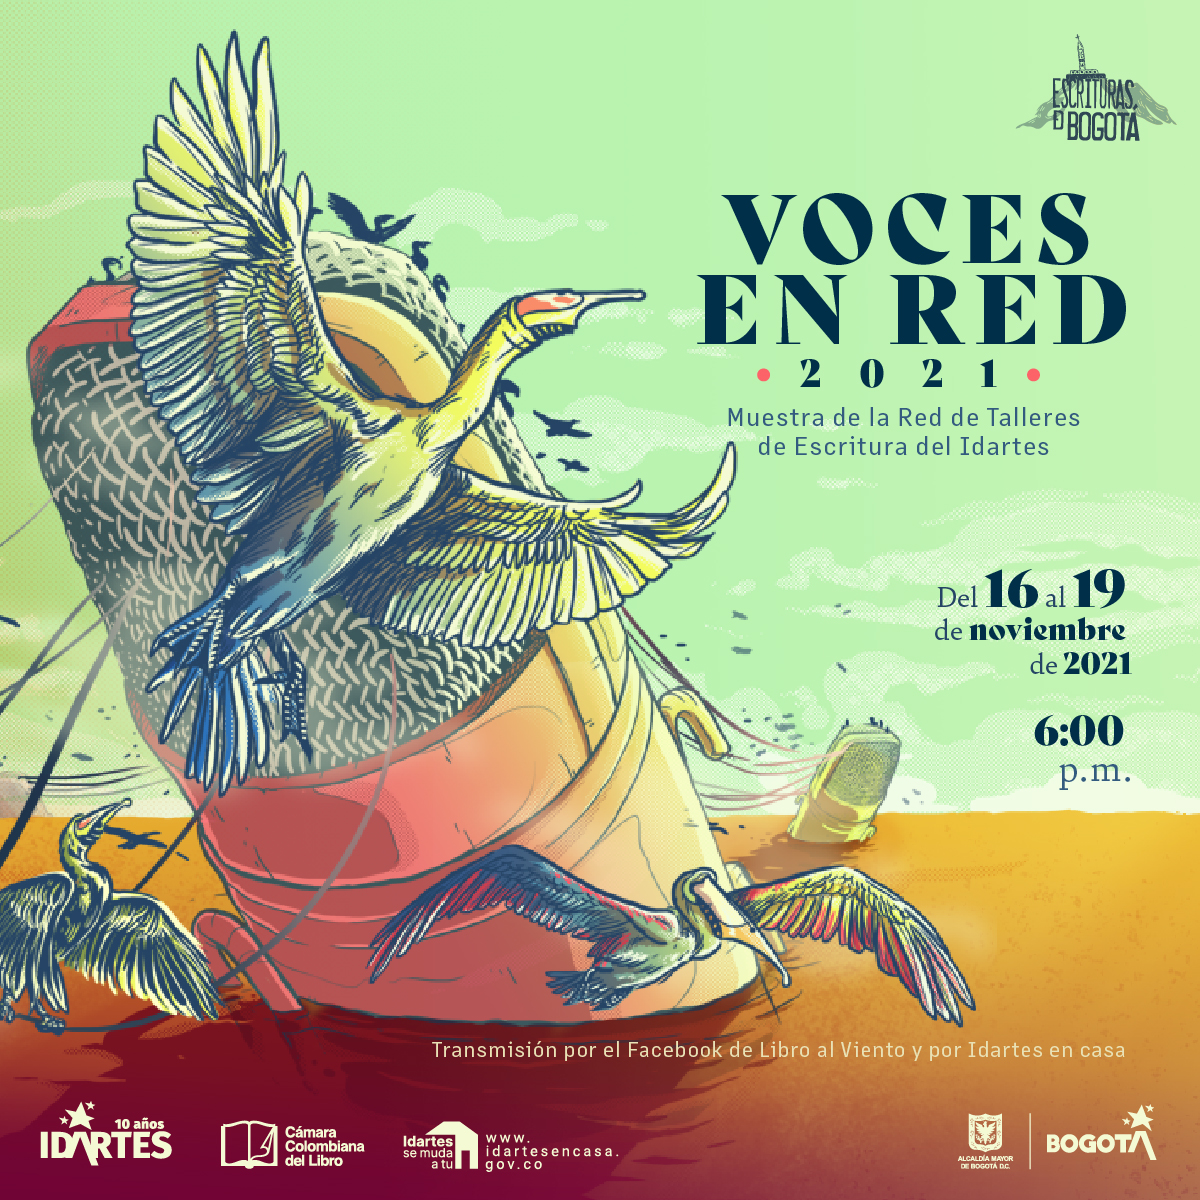 Pieza gráfica del Festival Voces en Red, con un micrófono flotando en el mar y aves volando alrededor